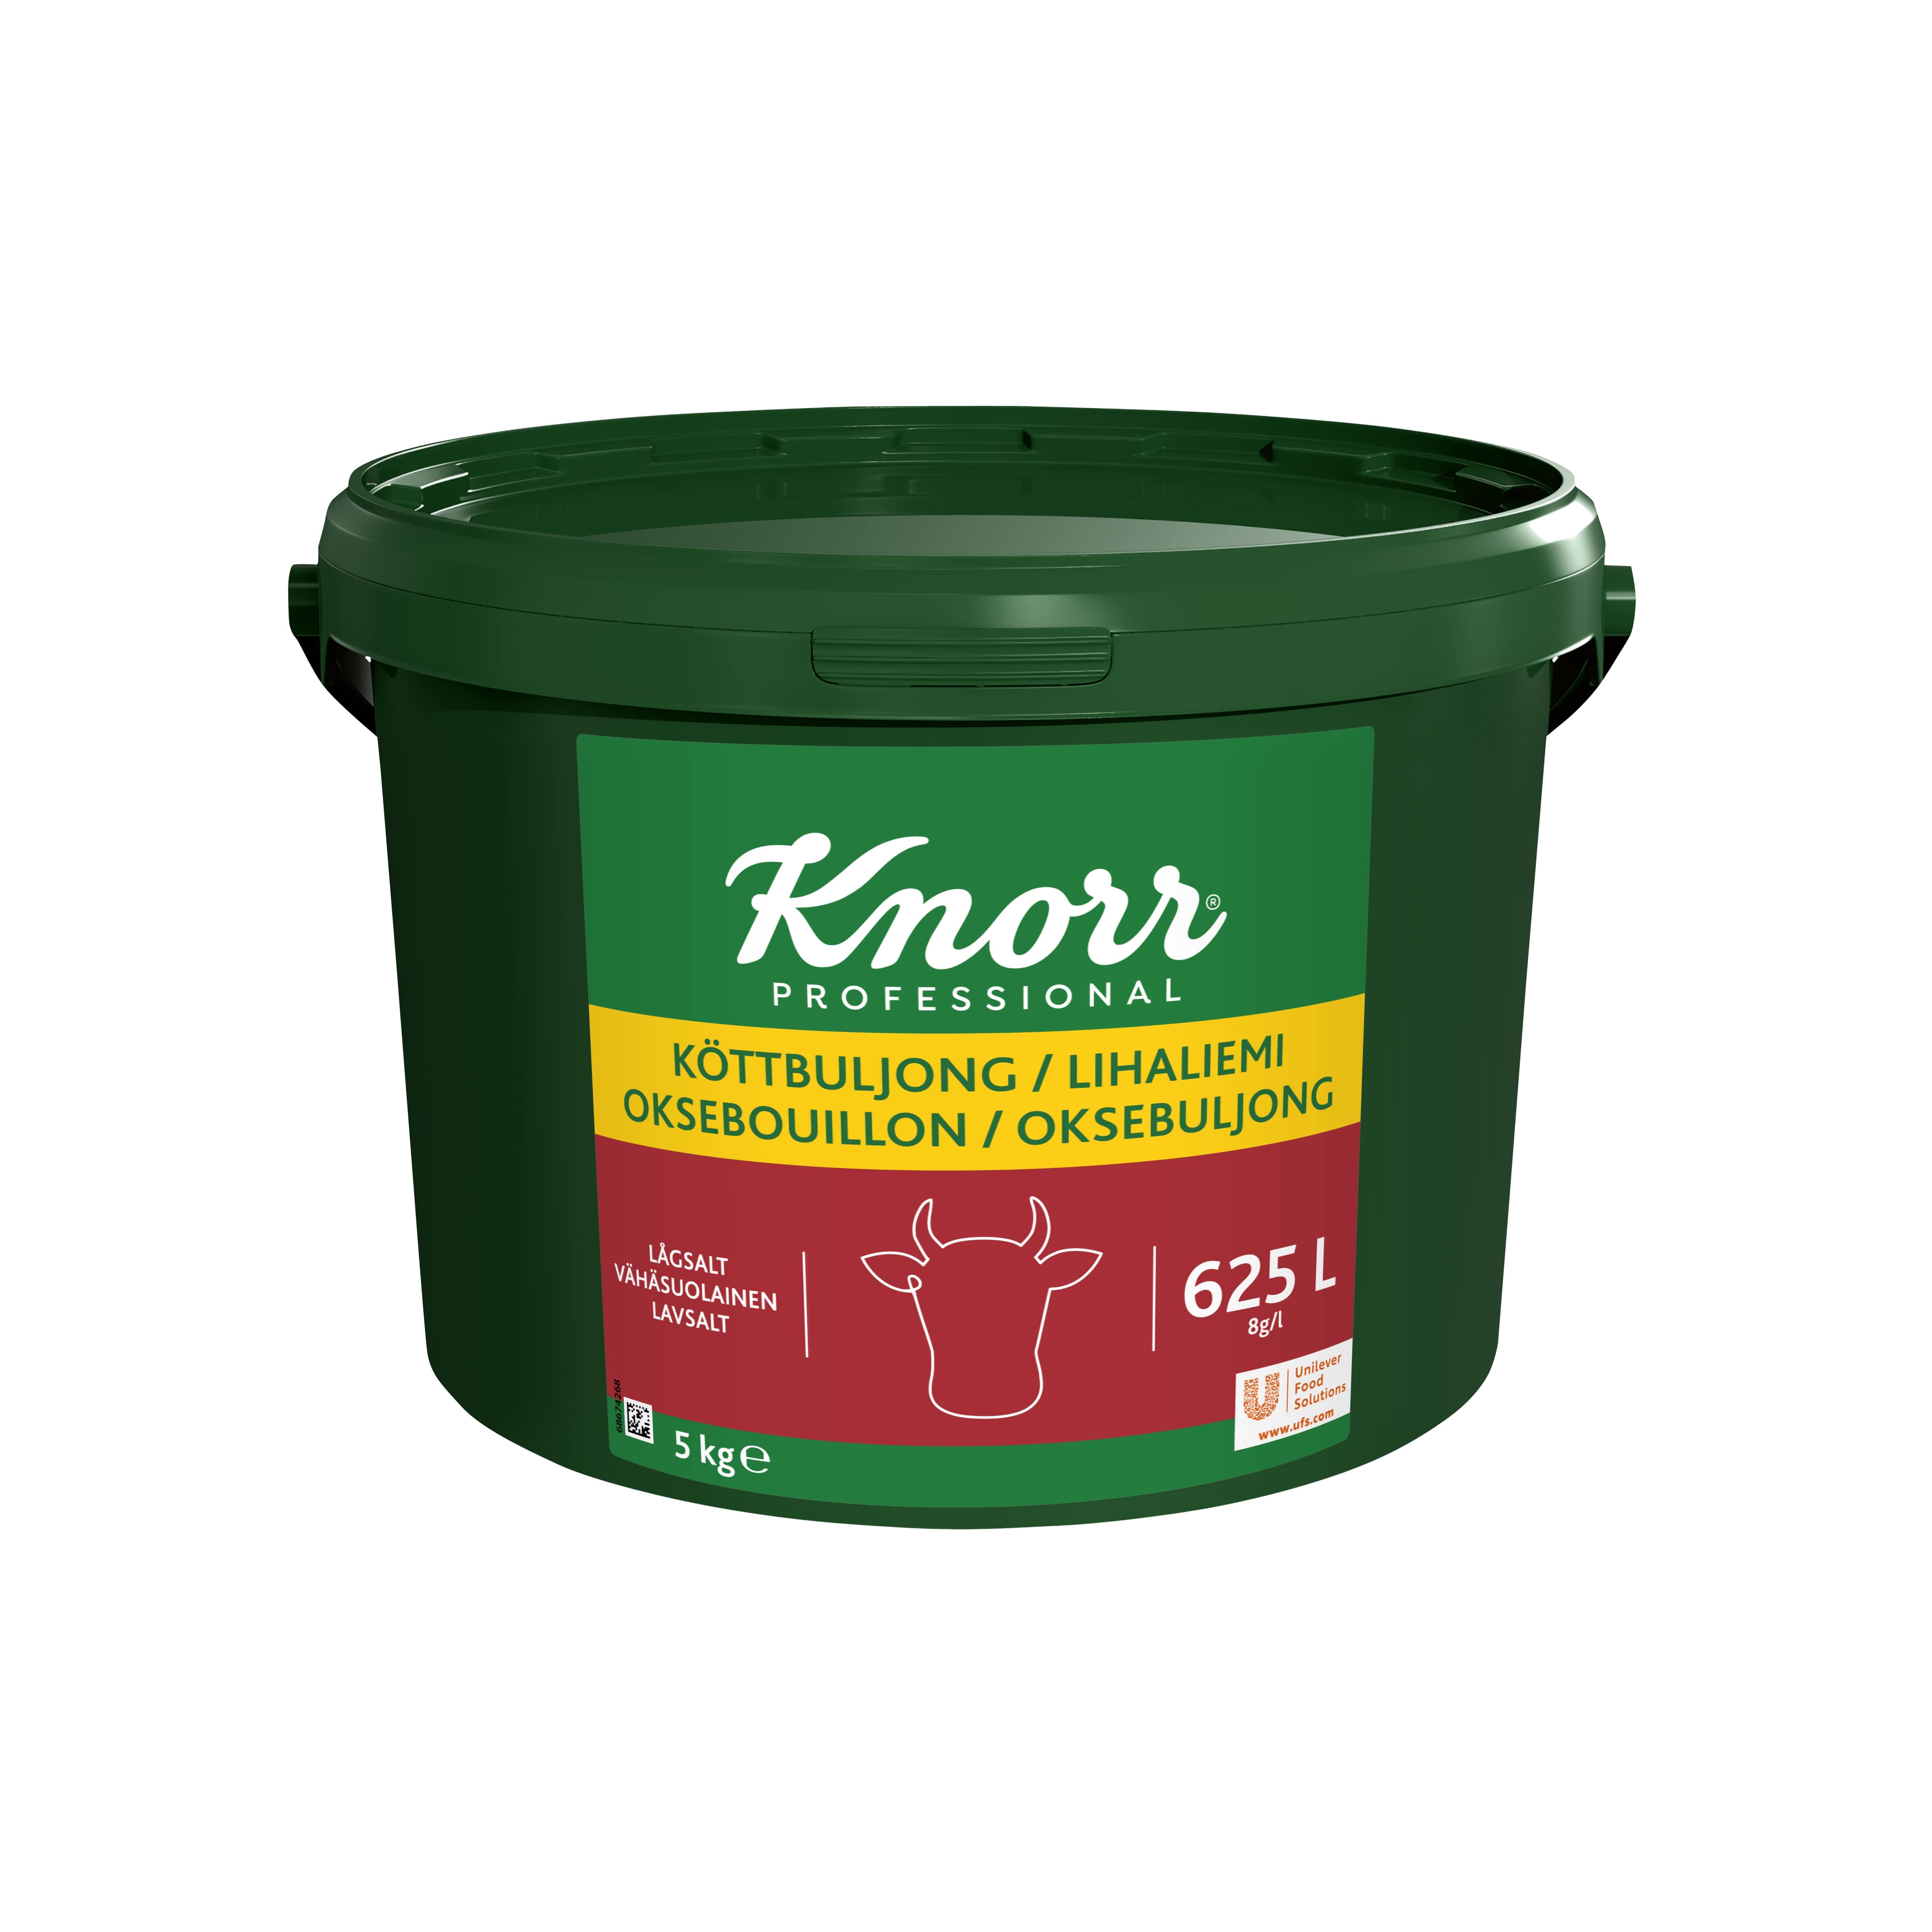 Knorr Lihaliemi vähäsuolainen 5 kg/ 625 L